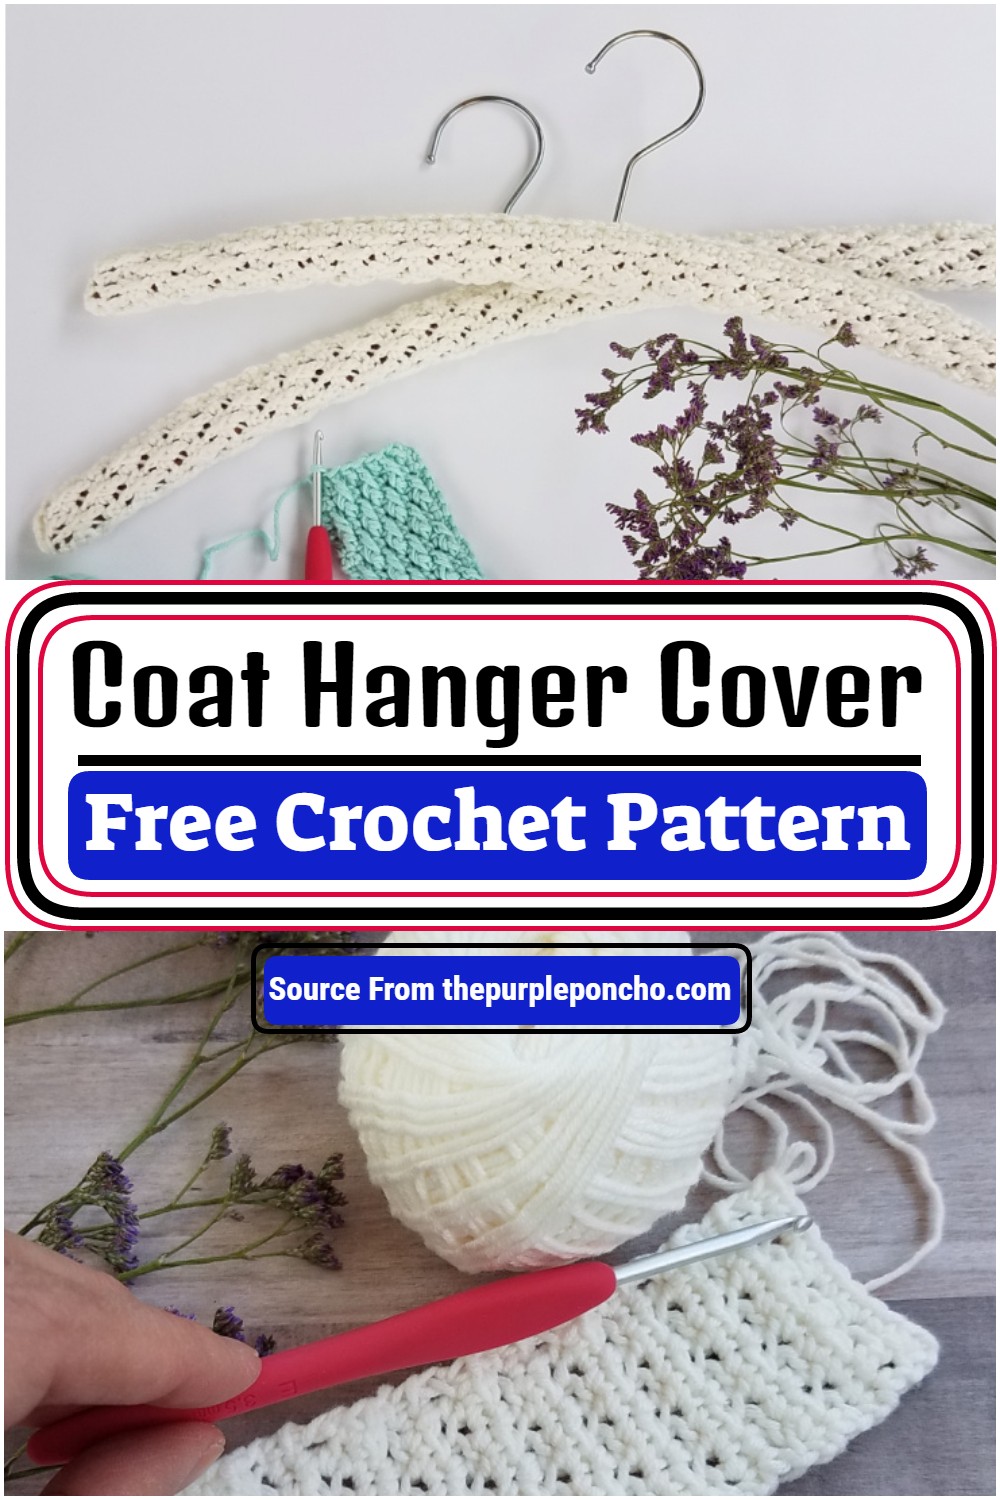 Free Crochet Coat Hanger Cover Pattern